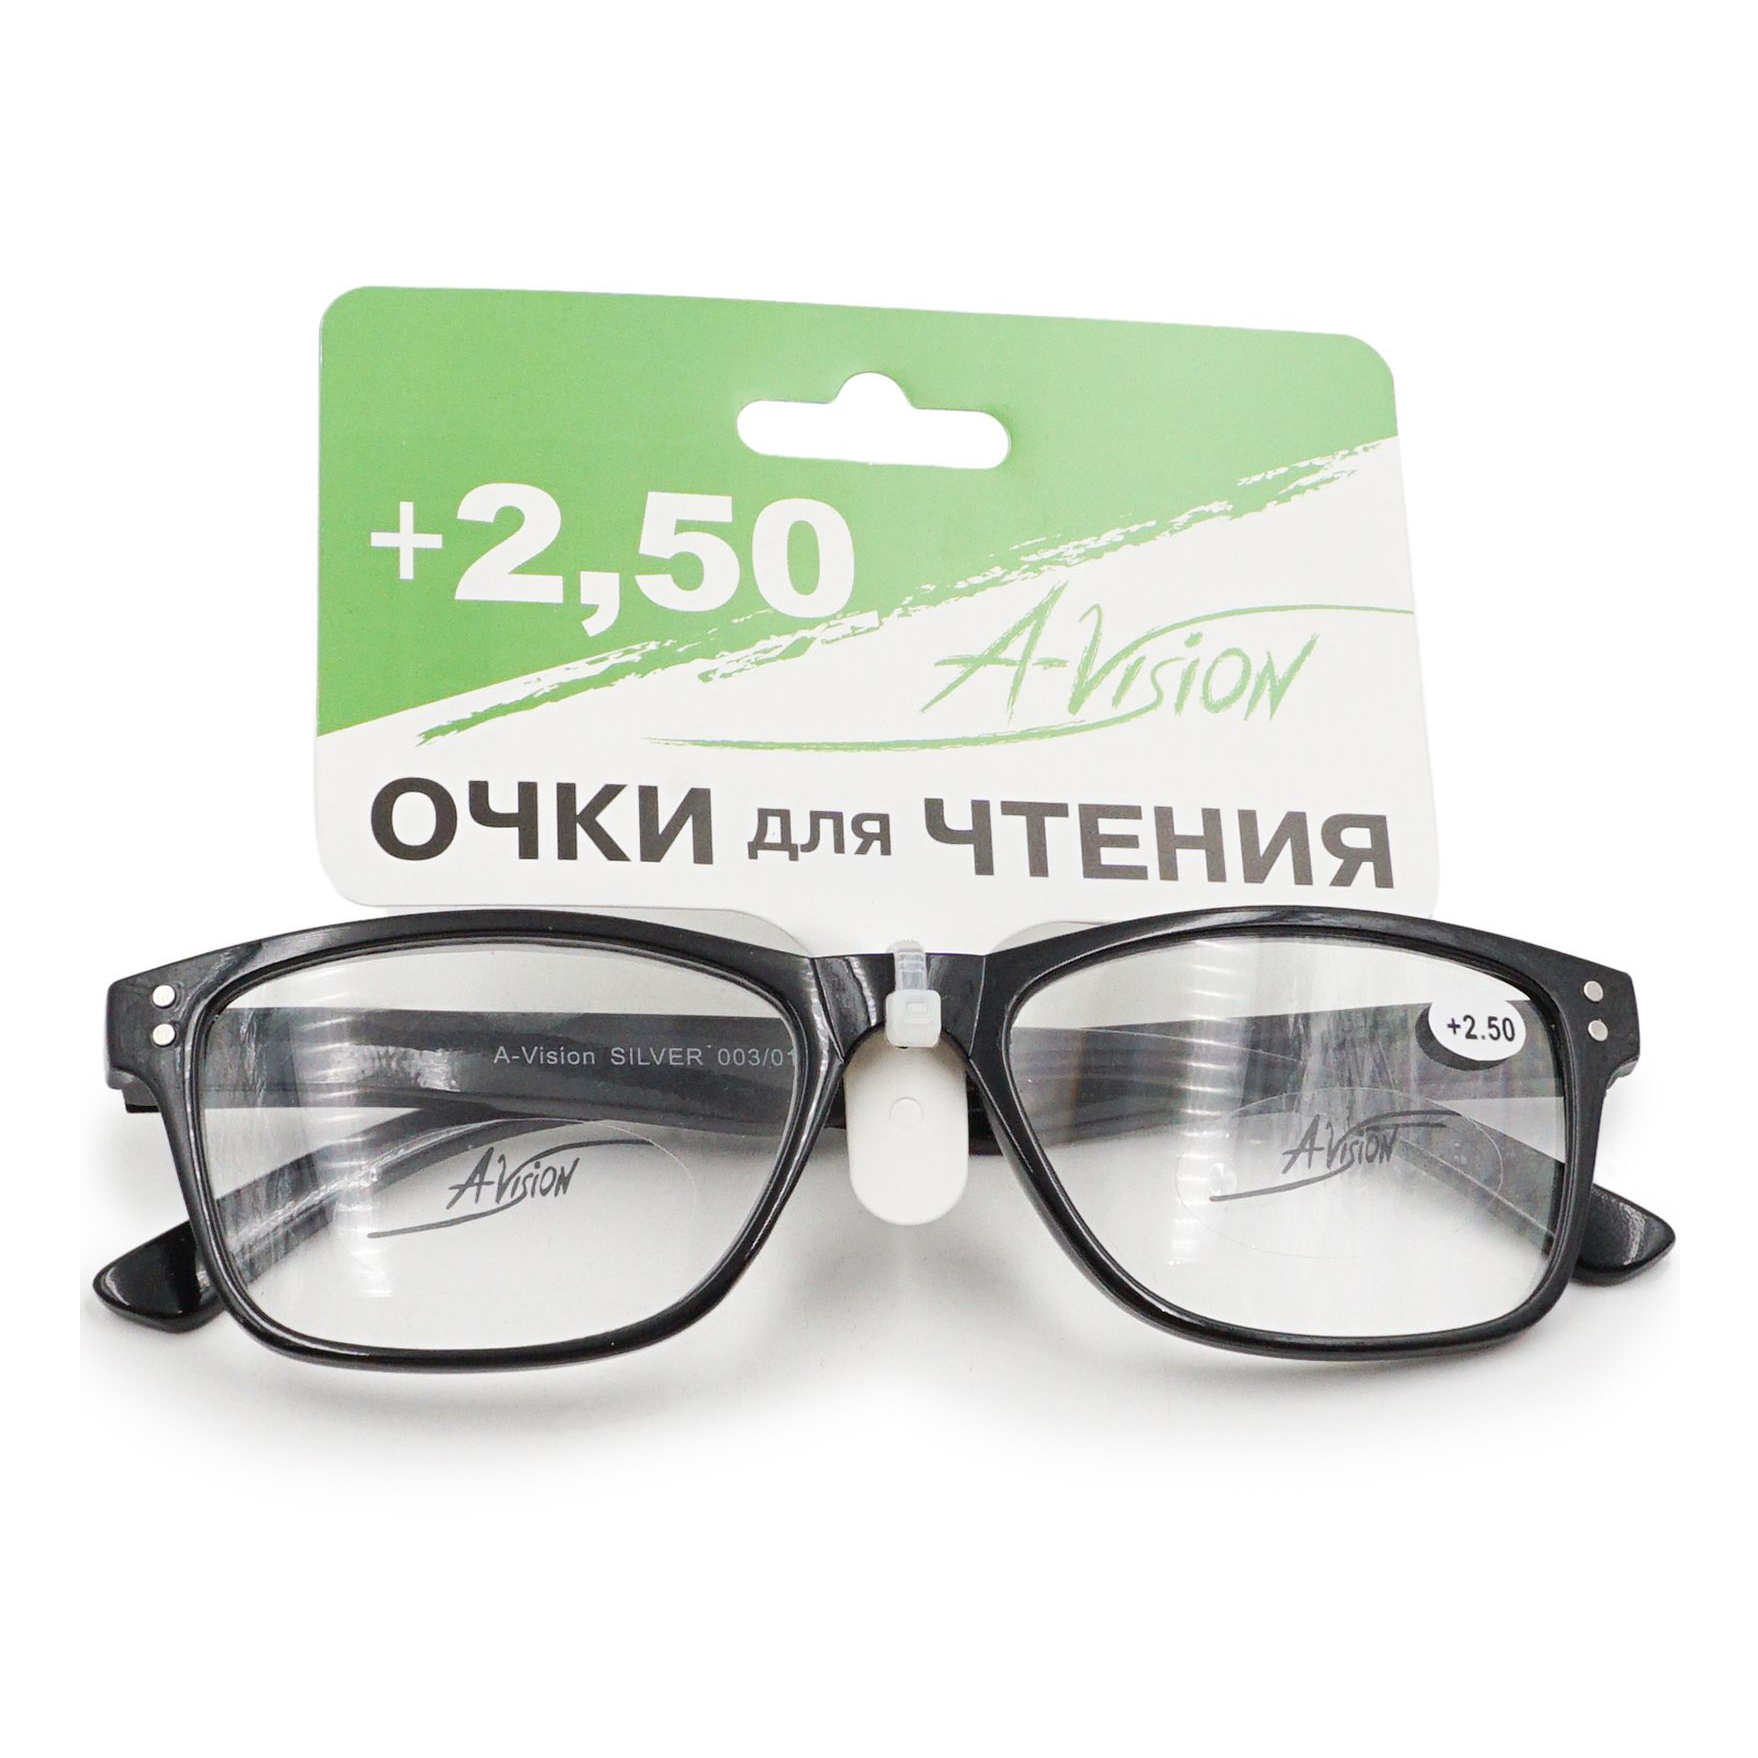 Купить Очки A-Vision для чтения +2, 5